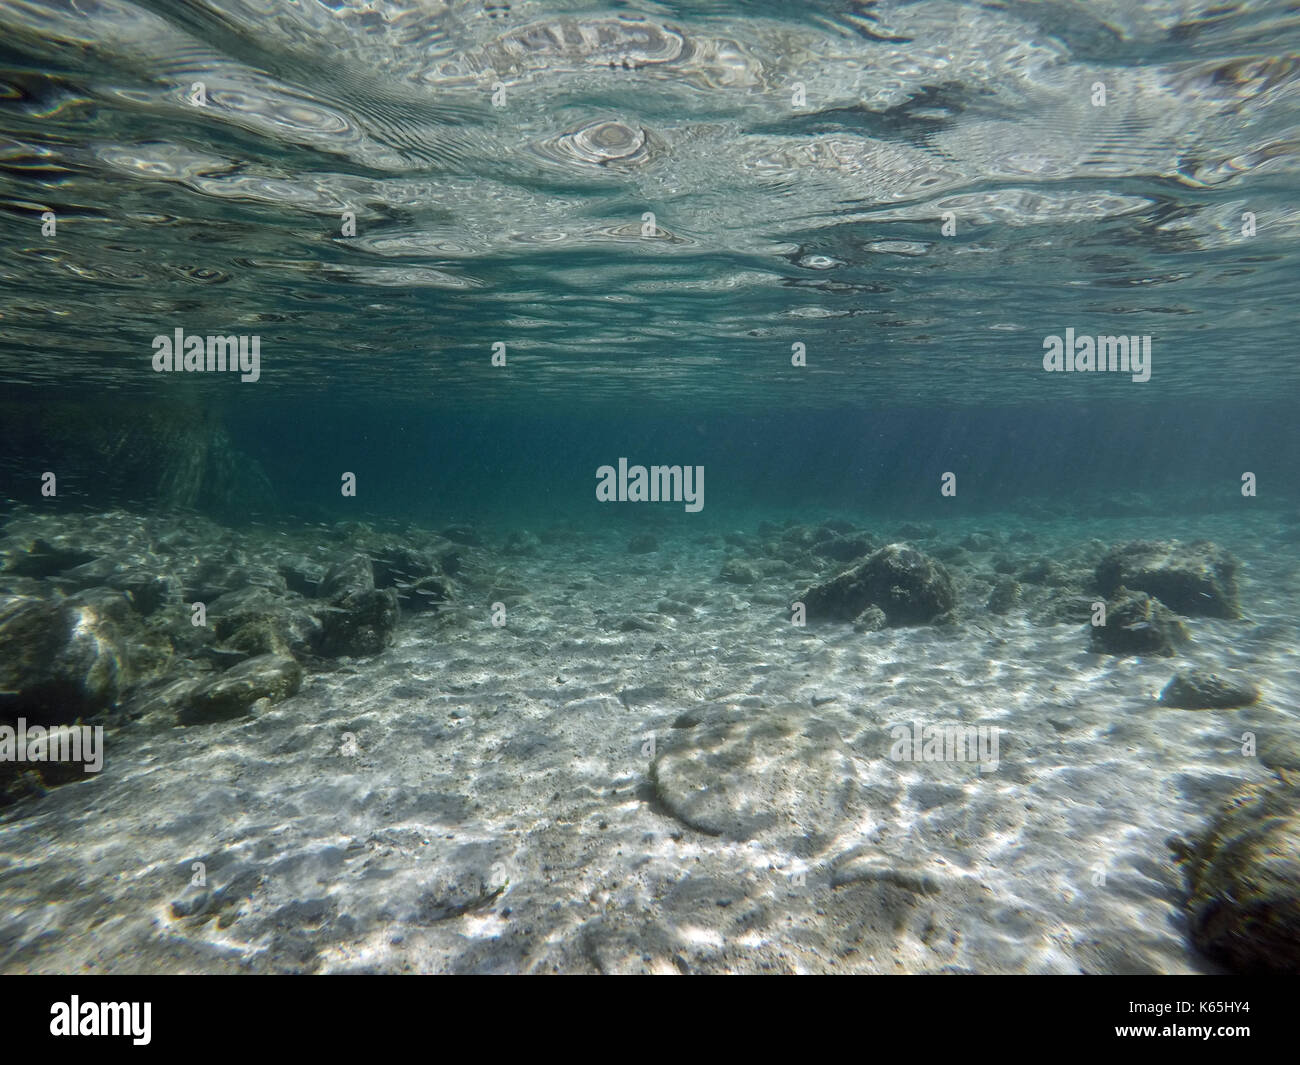 Sardinia, undersea image Stock Photo